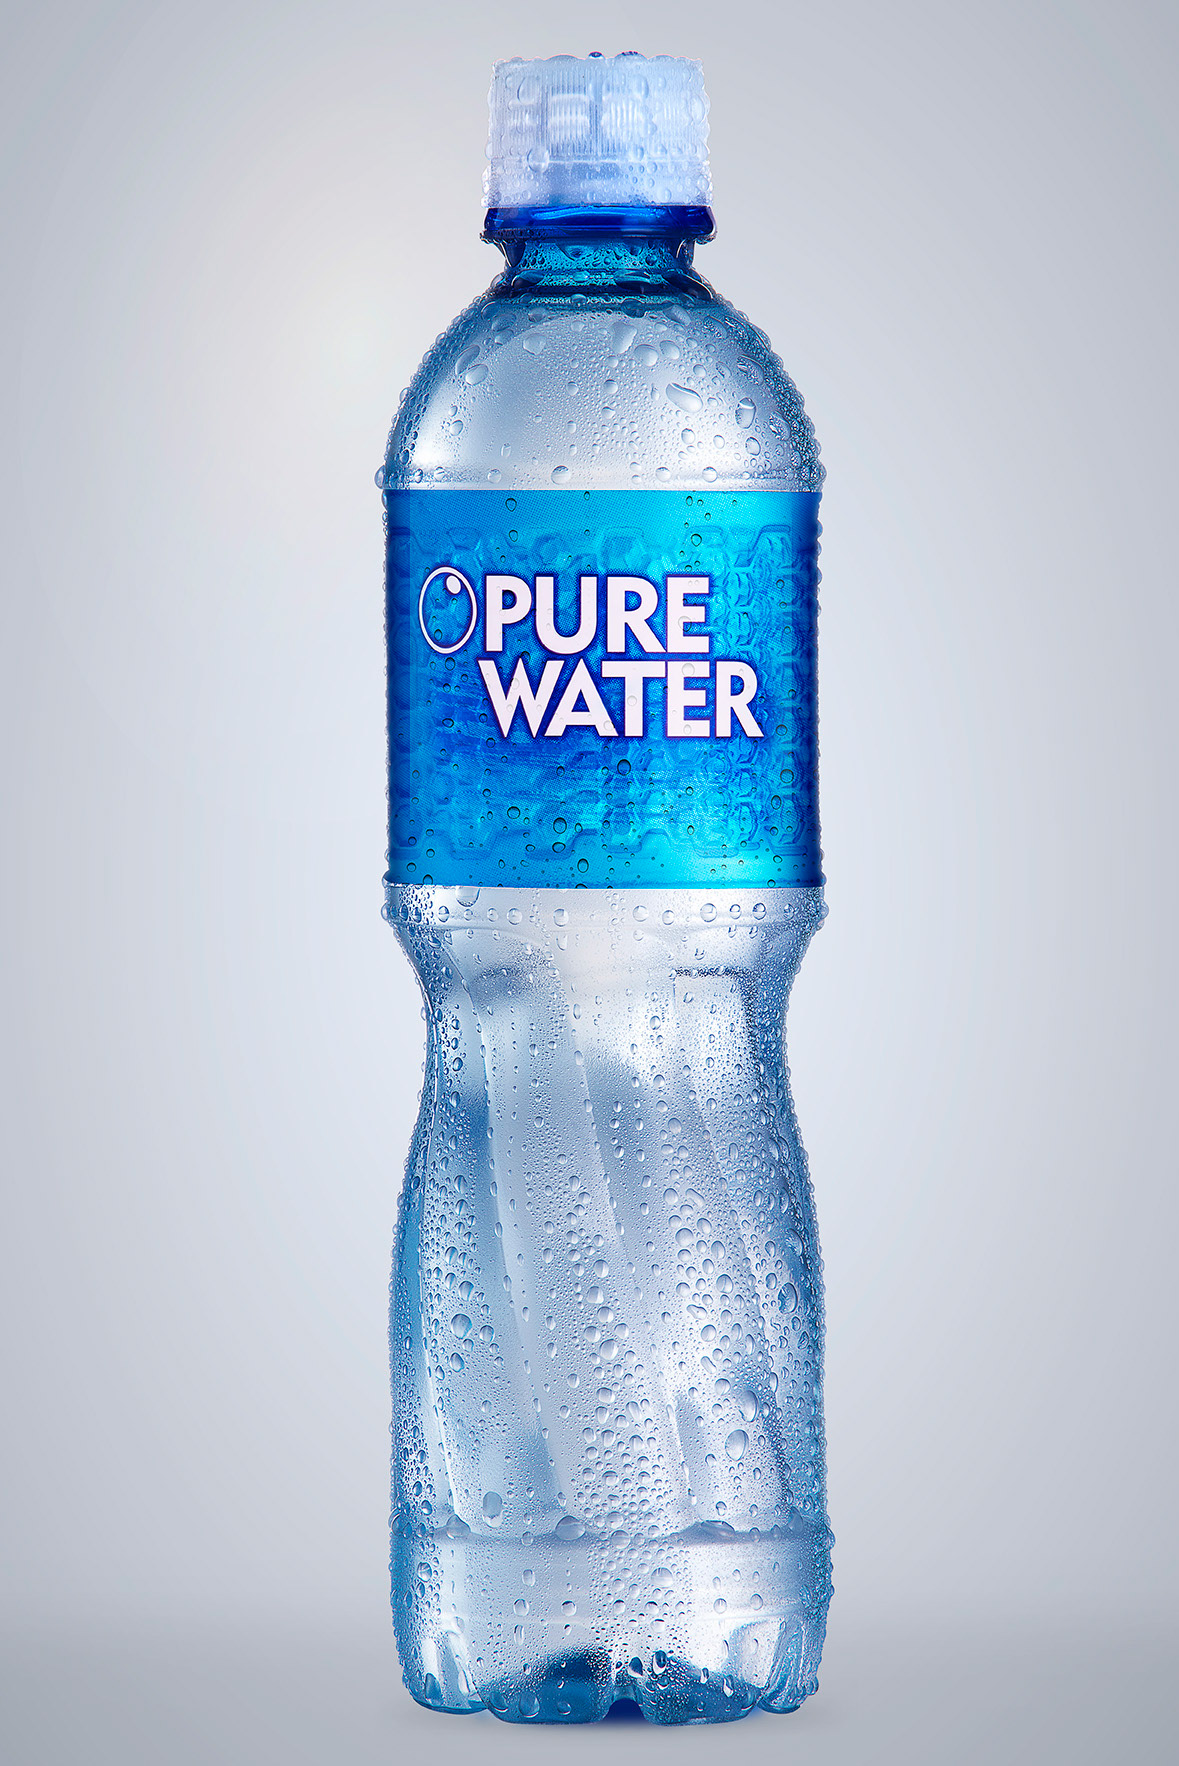 Вода бутылка звук. Бутылка для воды. Пур Ватер. Водный бутылка. Элитная вода питьевая в бутылках.